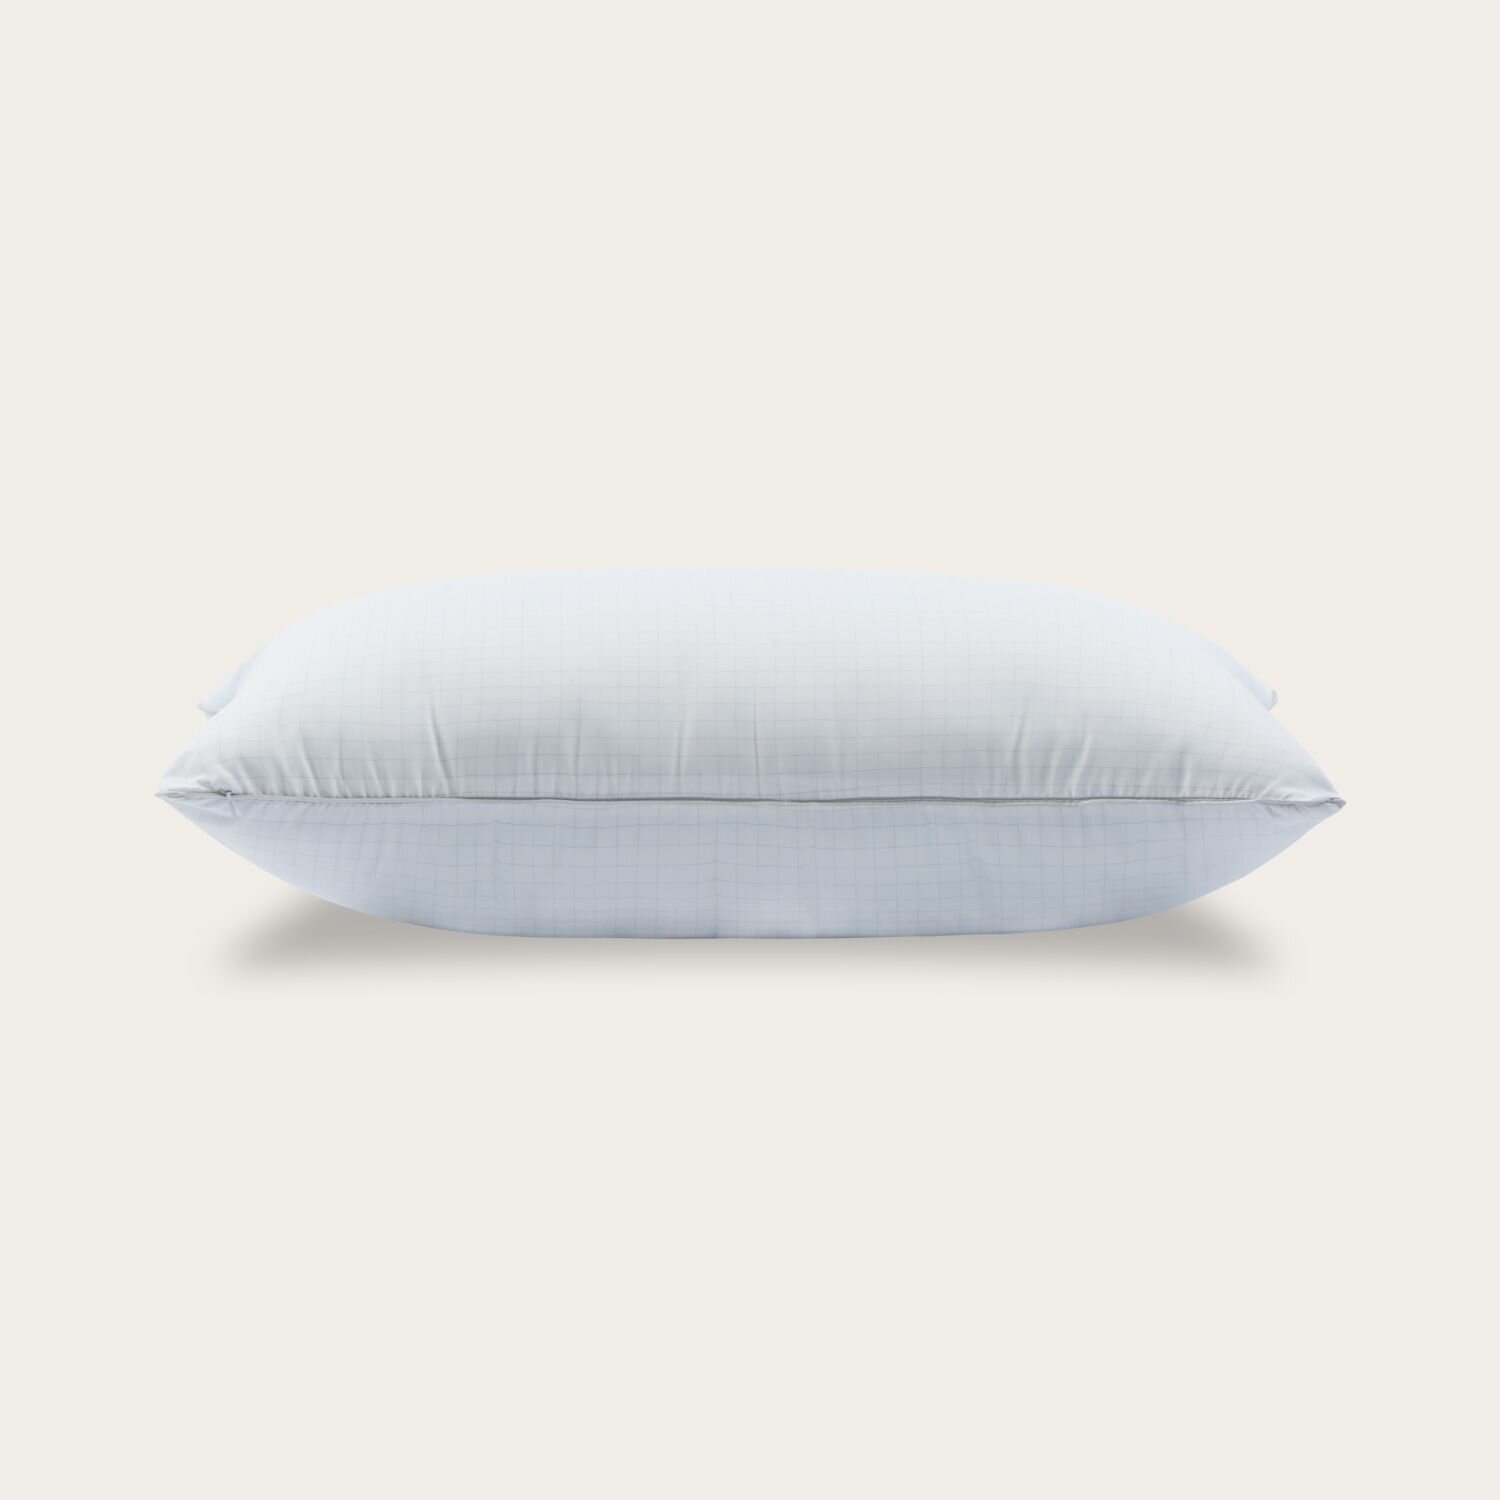 Подушка для сна и отдыха SONNO BLACK MAGIC, с регулируемой жесткостью, гипоаллергенная, упругая, 70х70 см